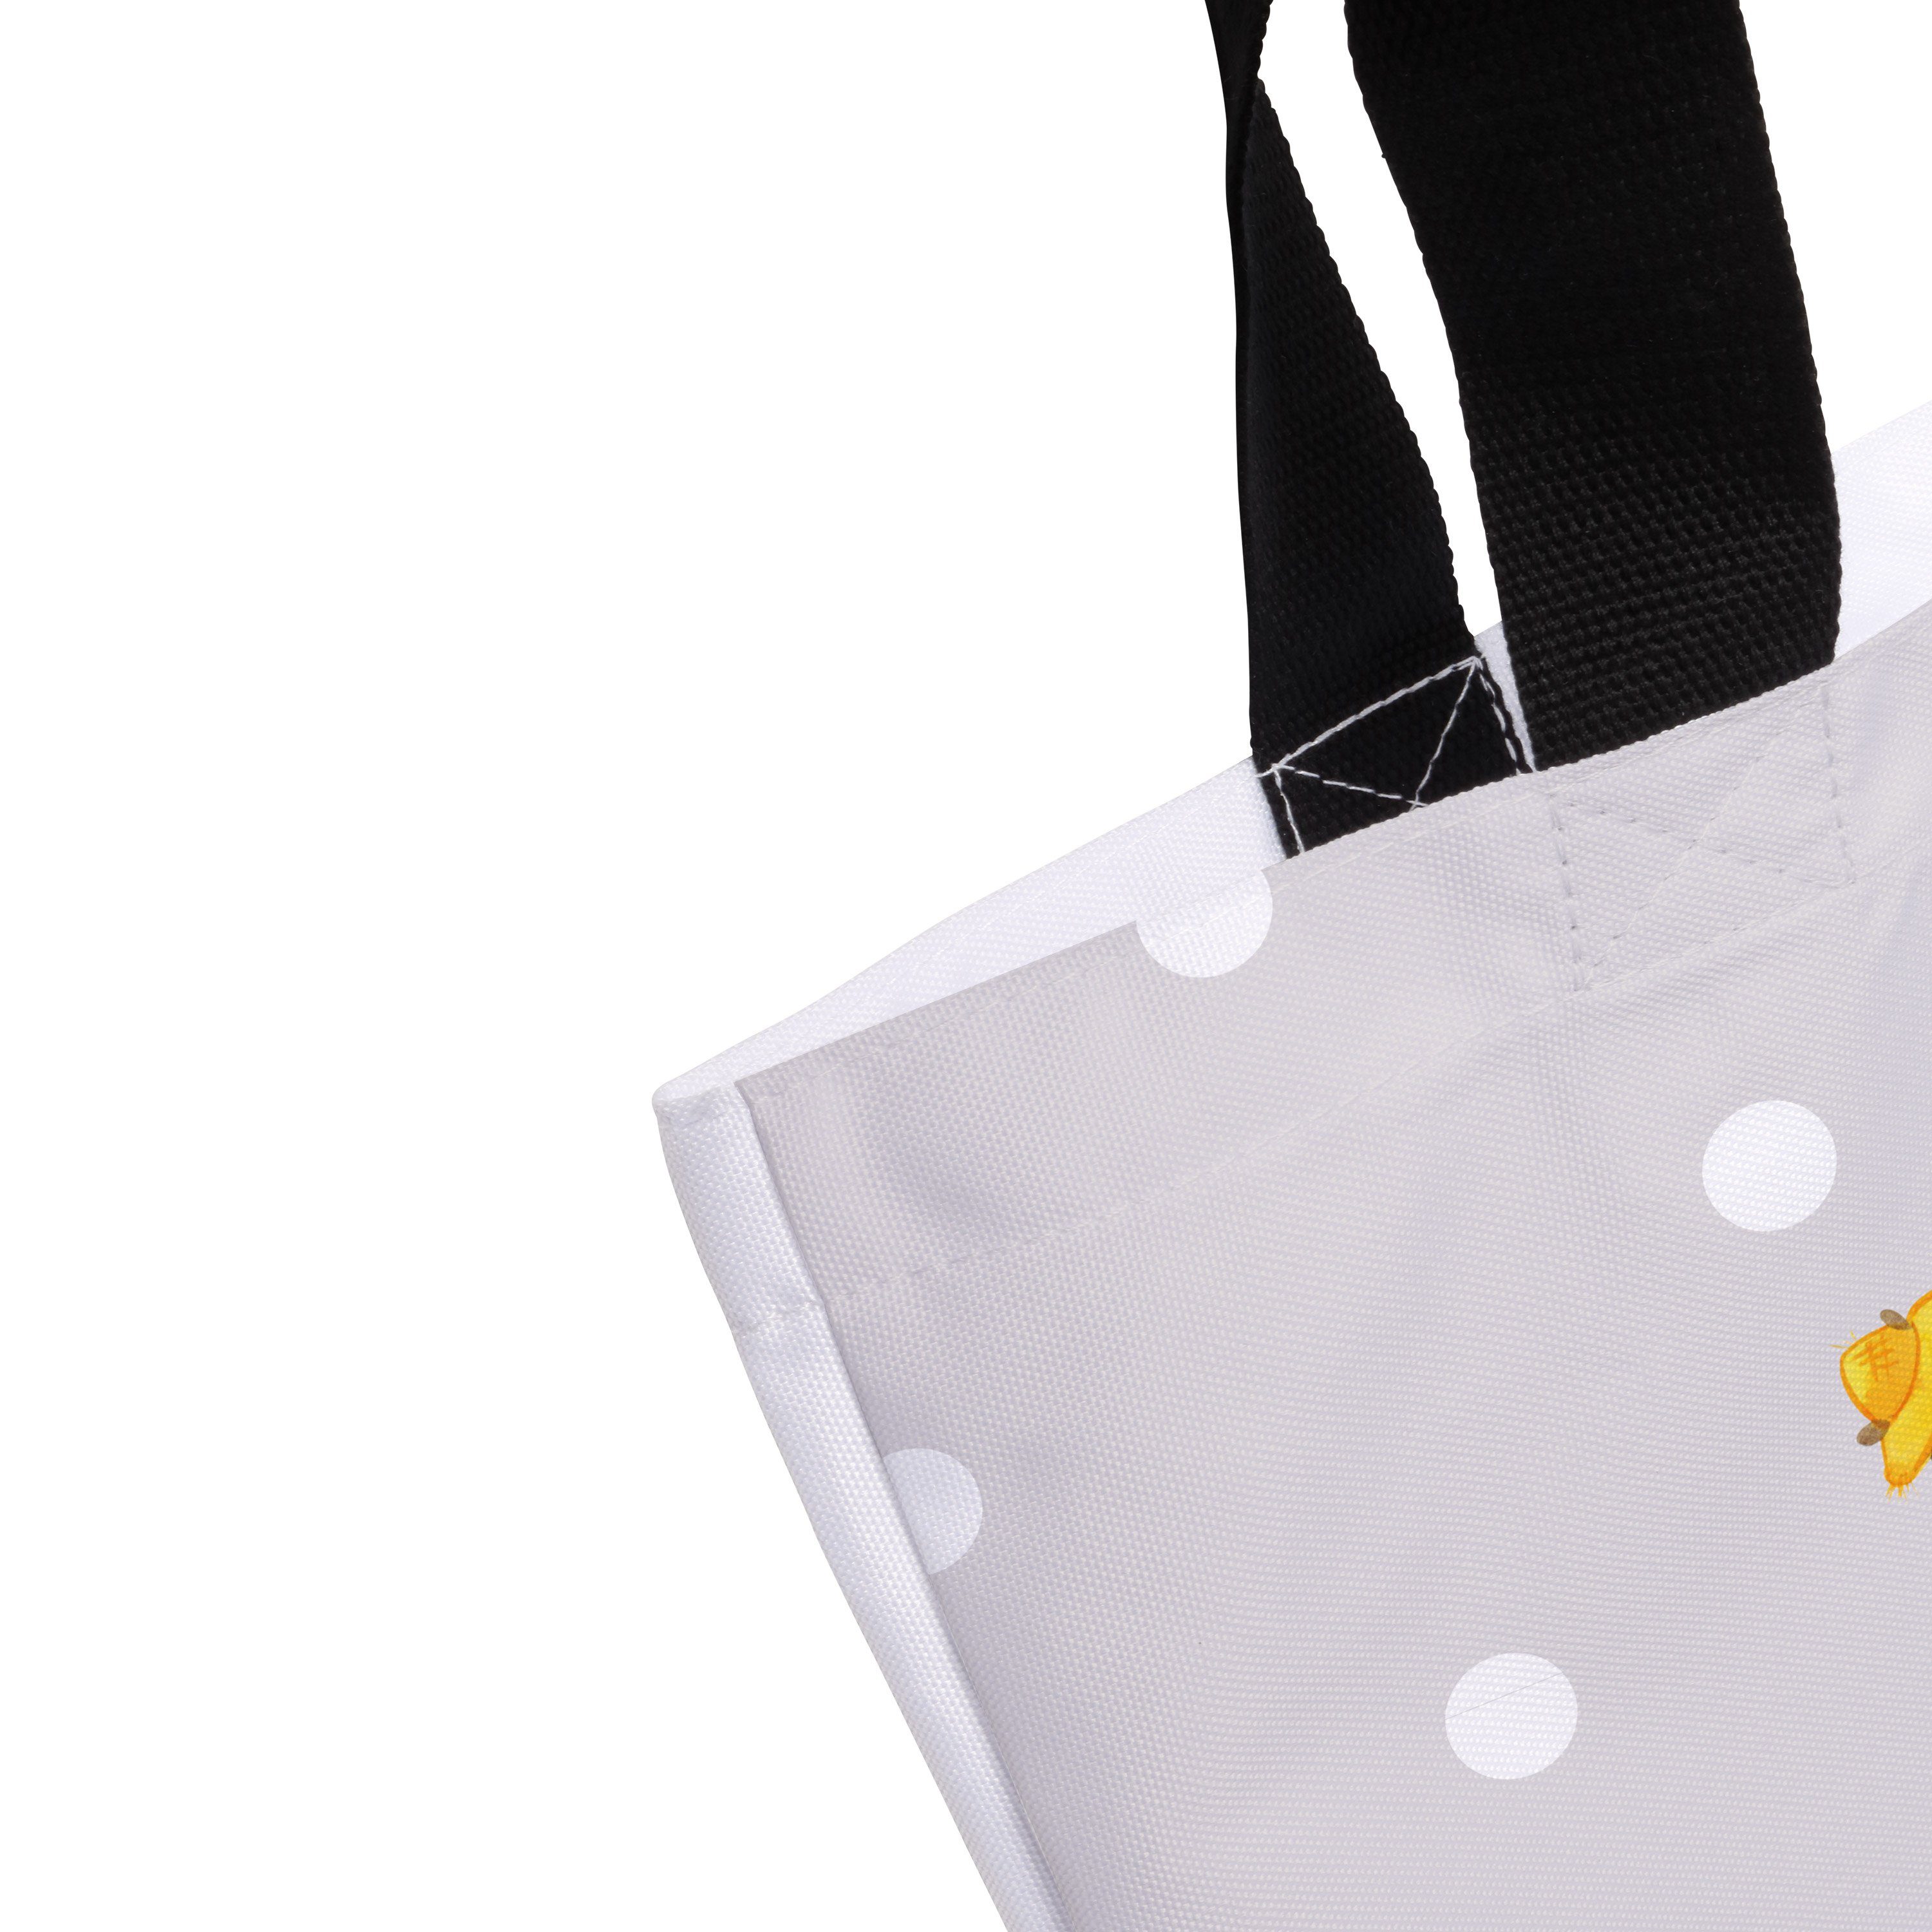 Mr. & Mrs. Panda Hut (1-tlg) Geschenk, Sc Bären - Vatertag, mit Grau Einkaufsbeutel, - Shopper Pastell